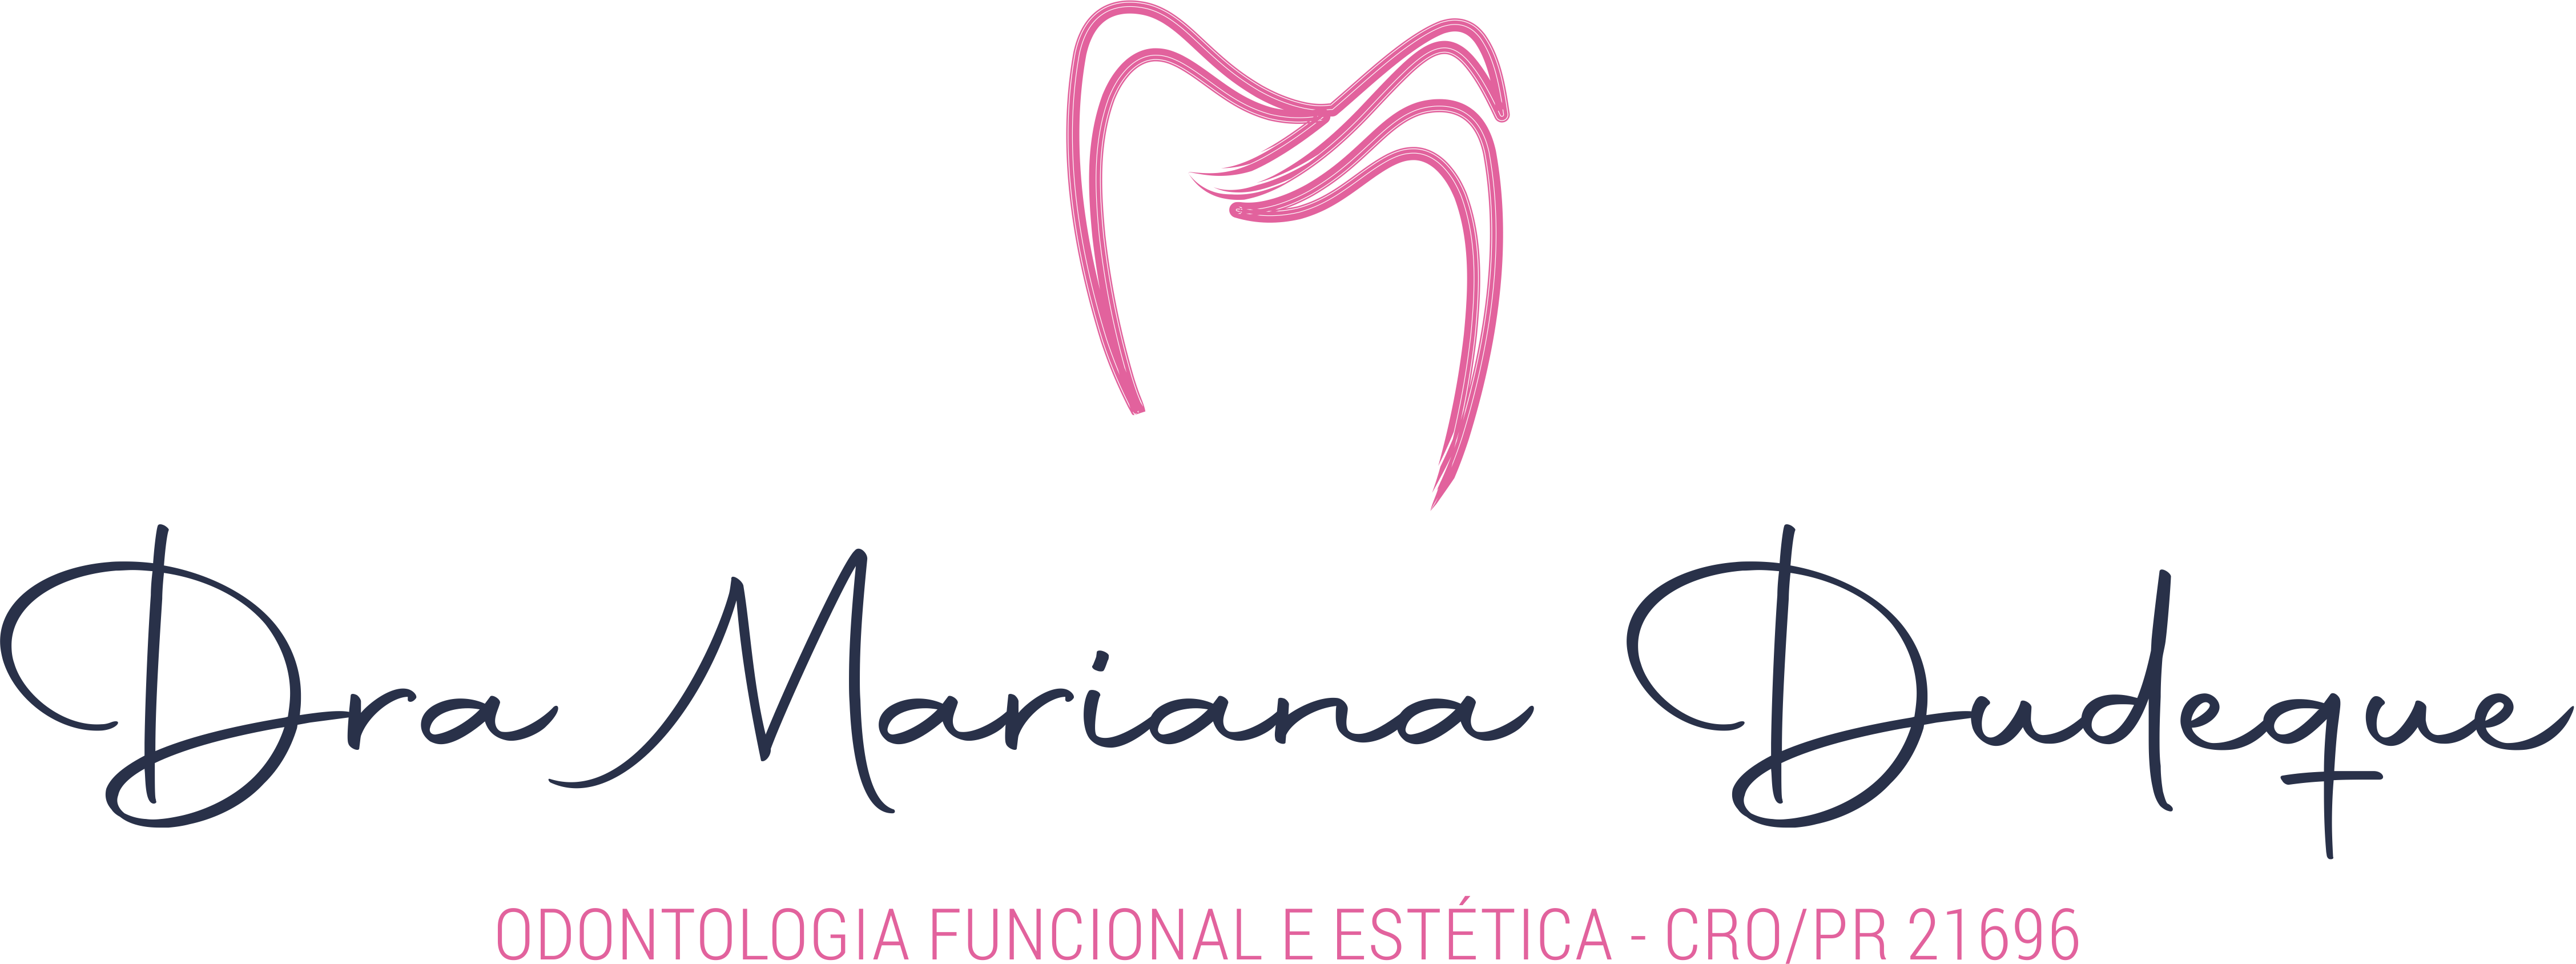 Logo 07 - Dra Mariana Dudeque